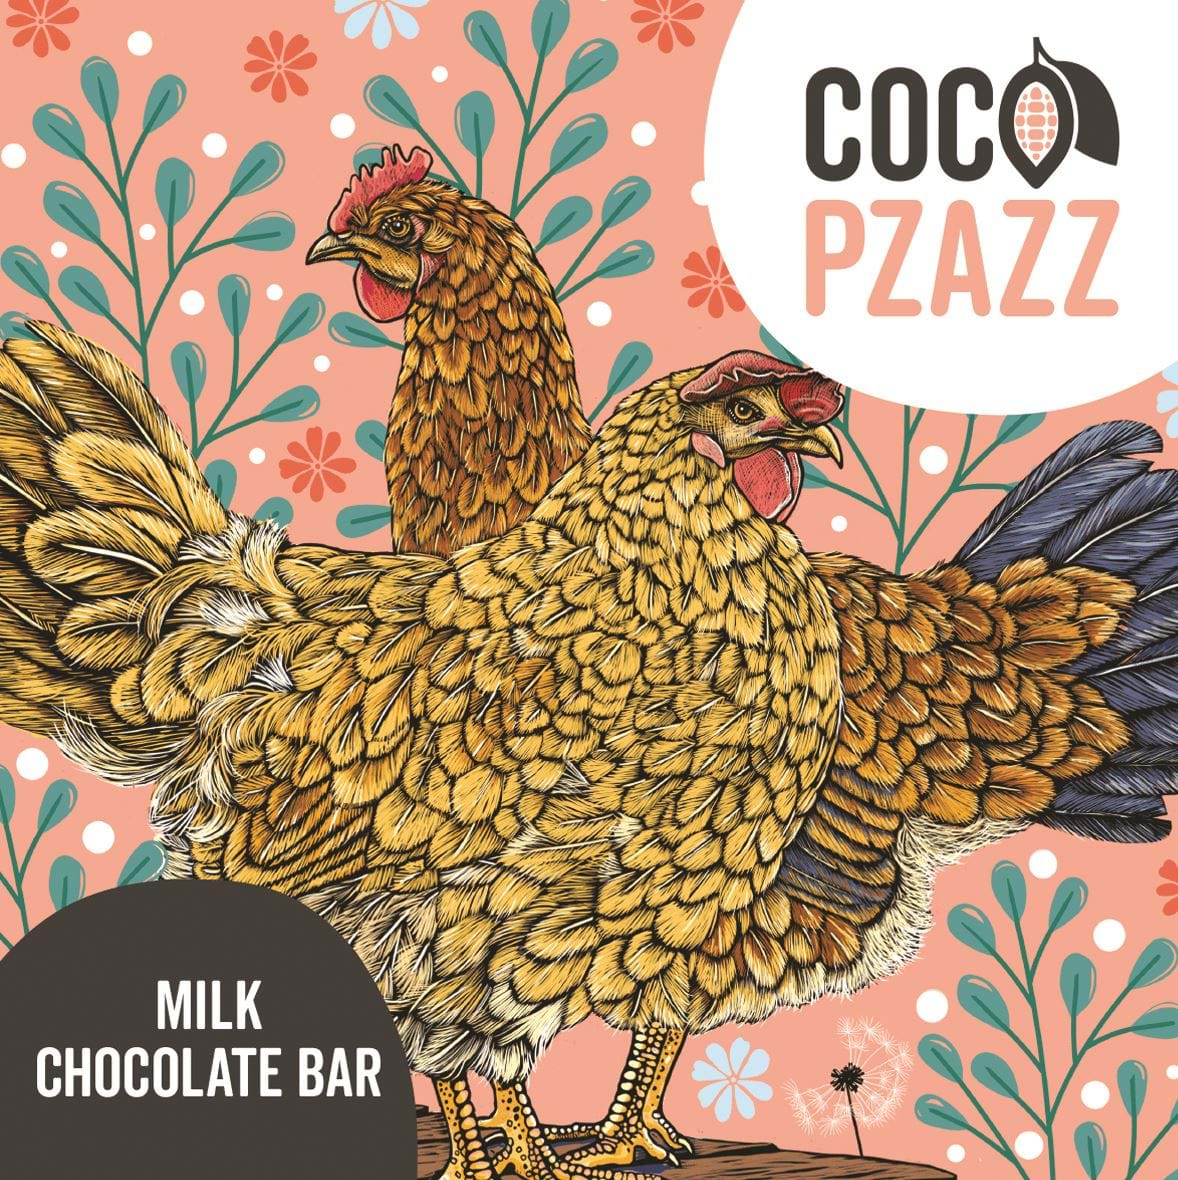 Milk Chocolate Bar by Coco Pzazz